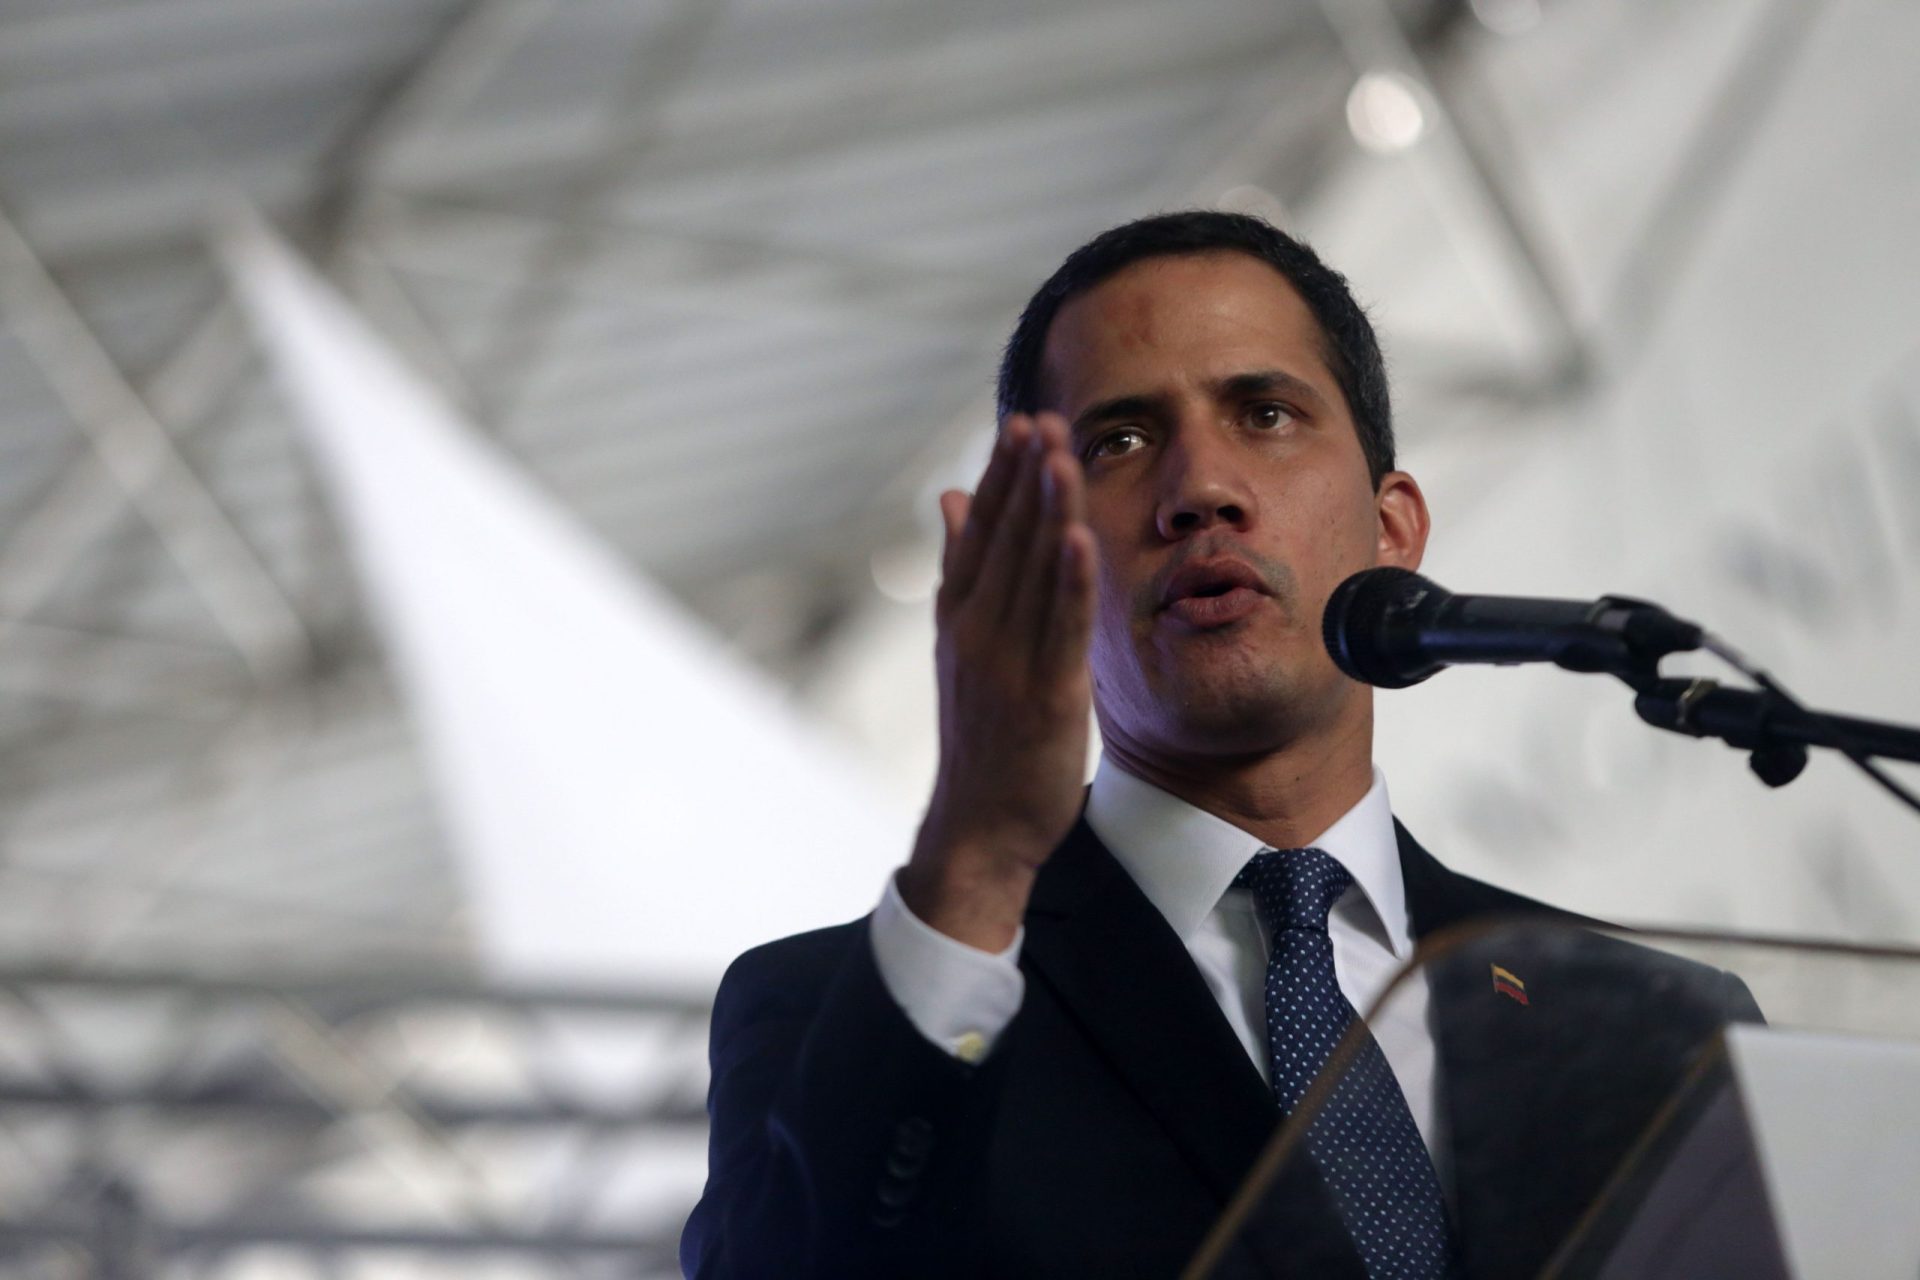 Governo venezuelano proibe Guaidó de exercer cargos públicos por 15 anos